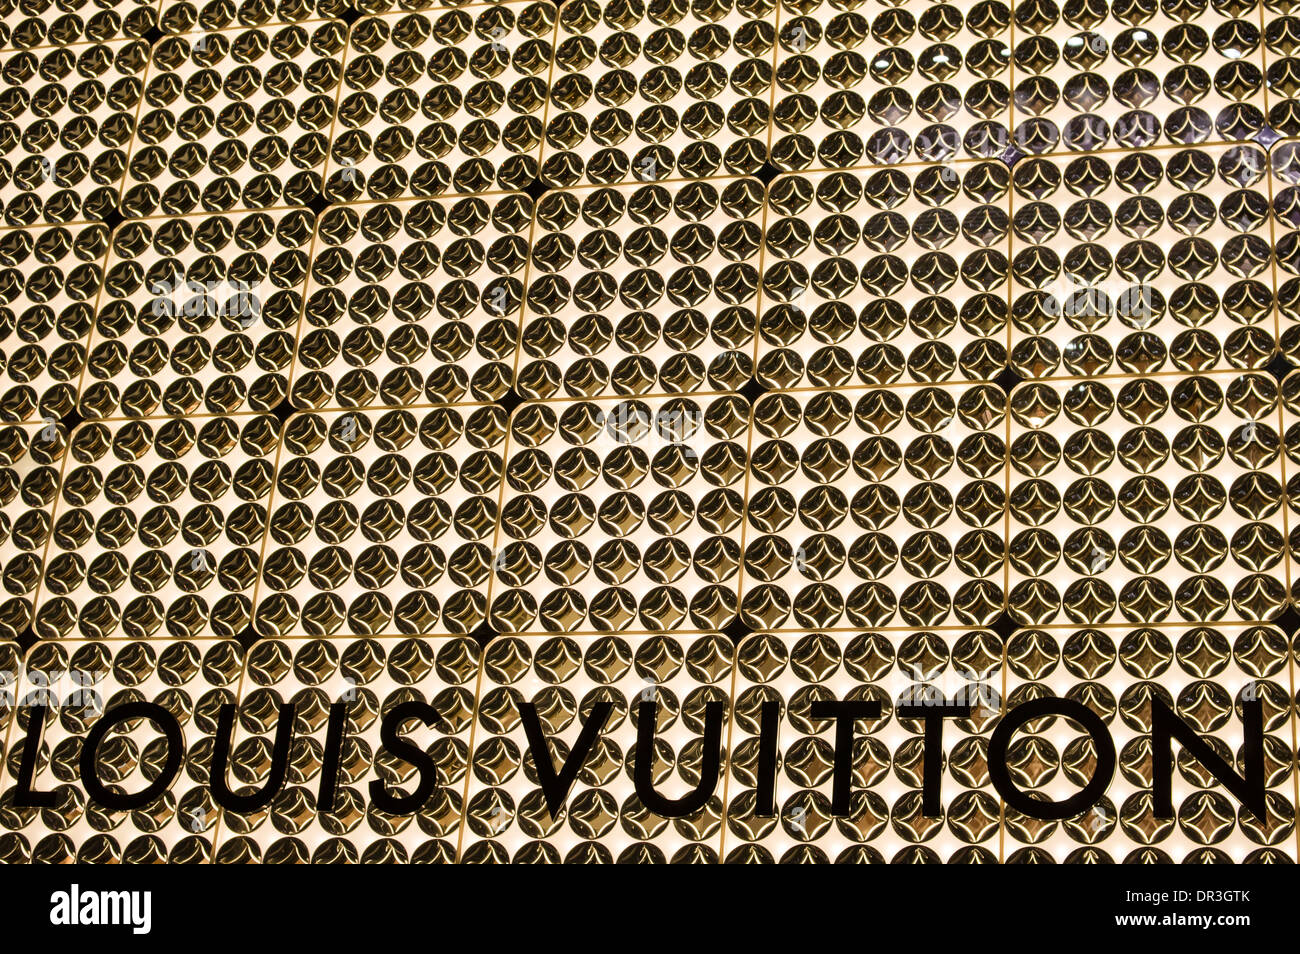 Letras De Louis Vuitton En Una Pared Foto de archivo editorial - Imagen de  louis, ropa: 127106598